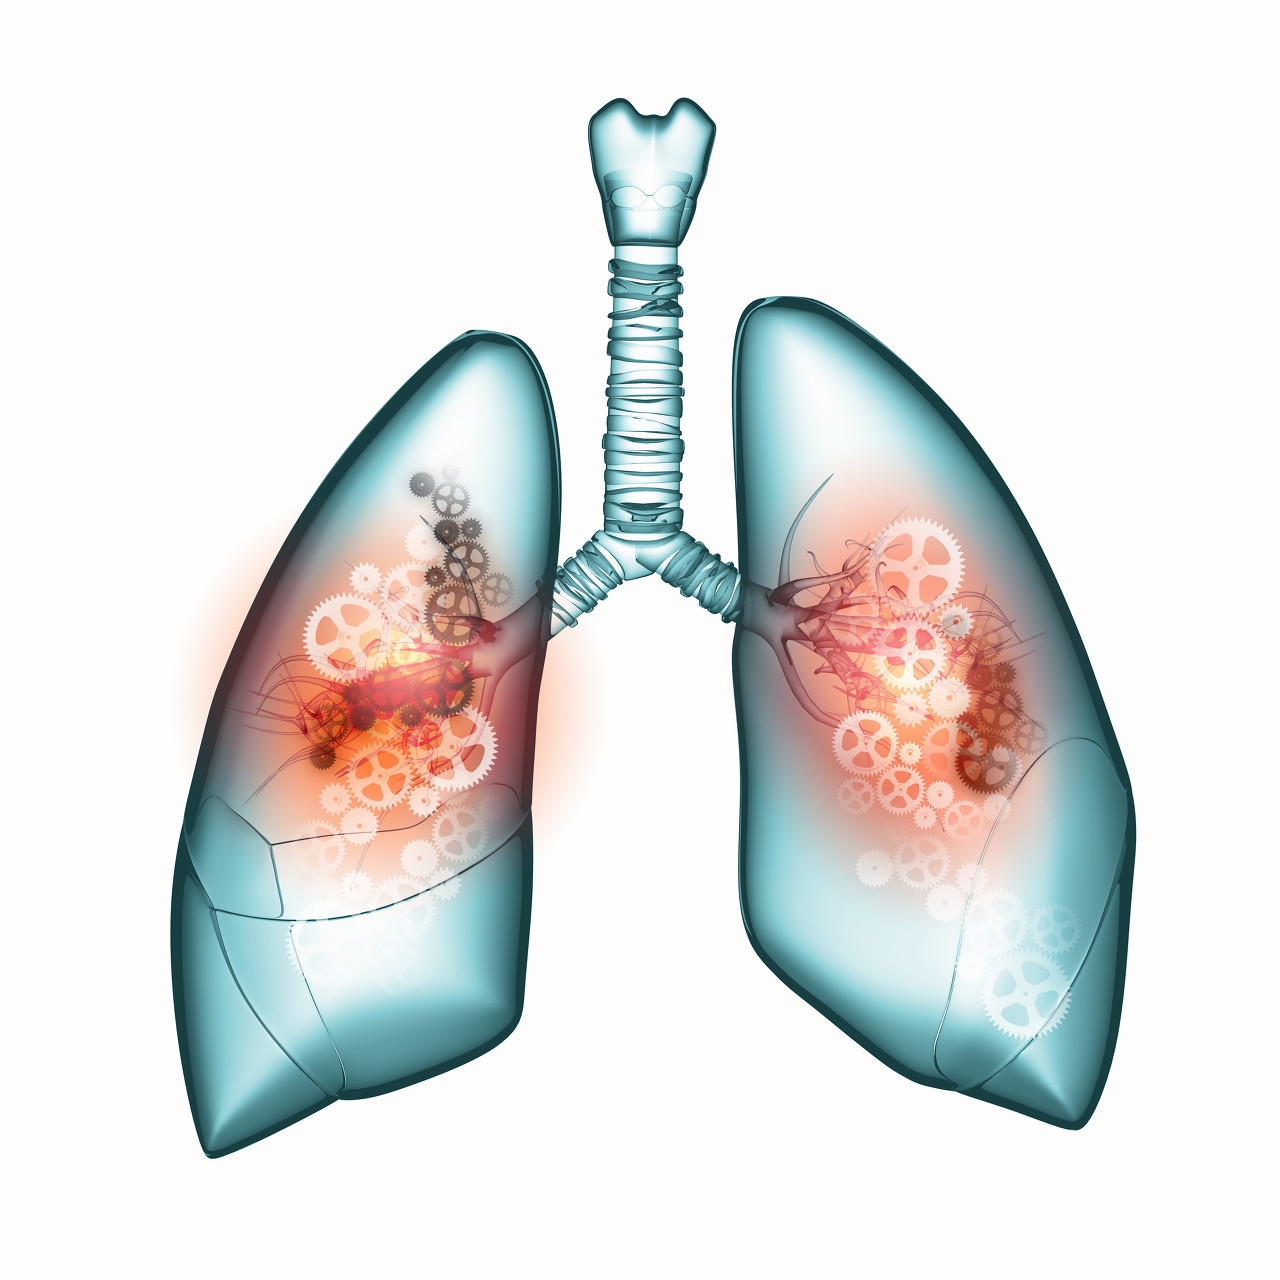 肺癌特效疗药泰瑞沙获美国批准，死亡风险降低83%